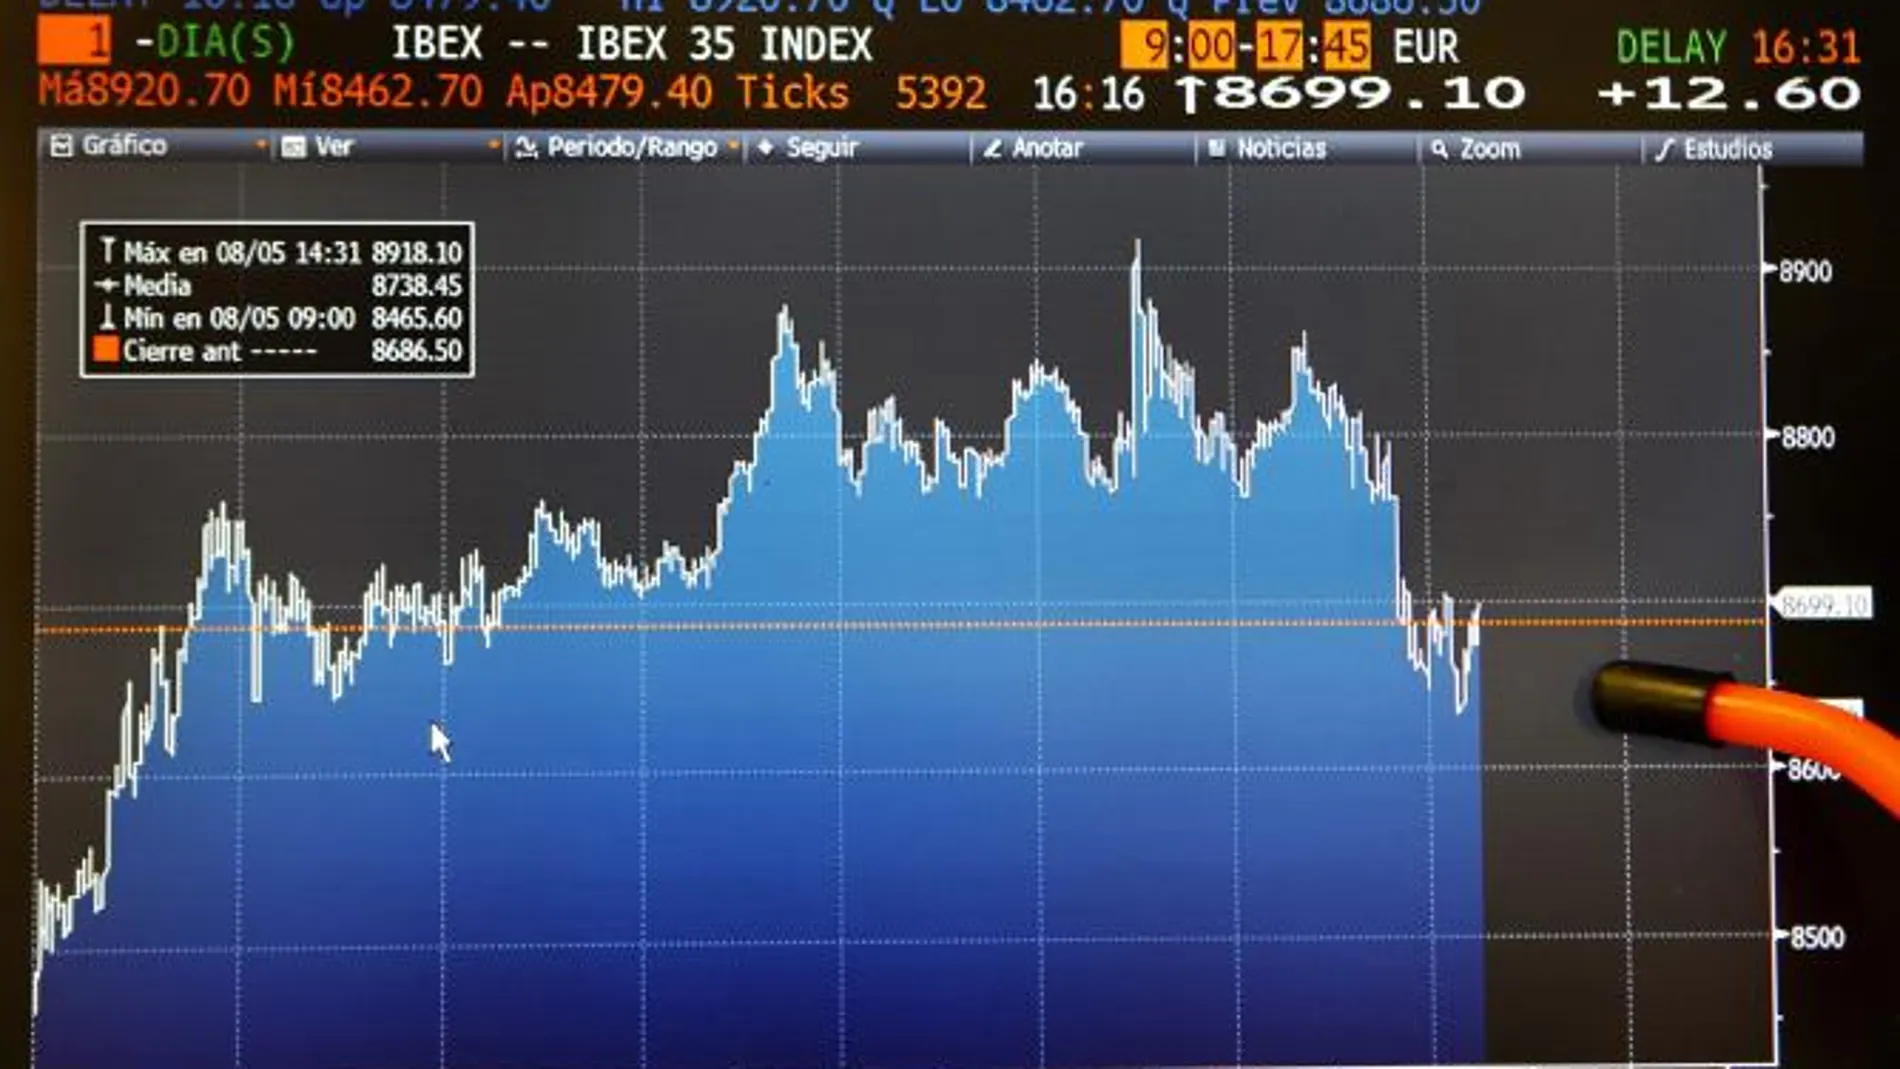 Pantalla que refleja la cotización del selectivo más representativo del mercado español, el IBEX 35, que a las 16:16 horas marcaba un valor de 8699,10 puntos